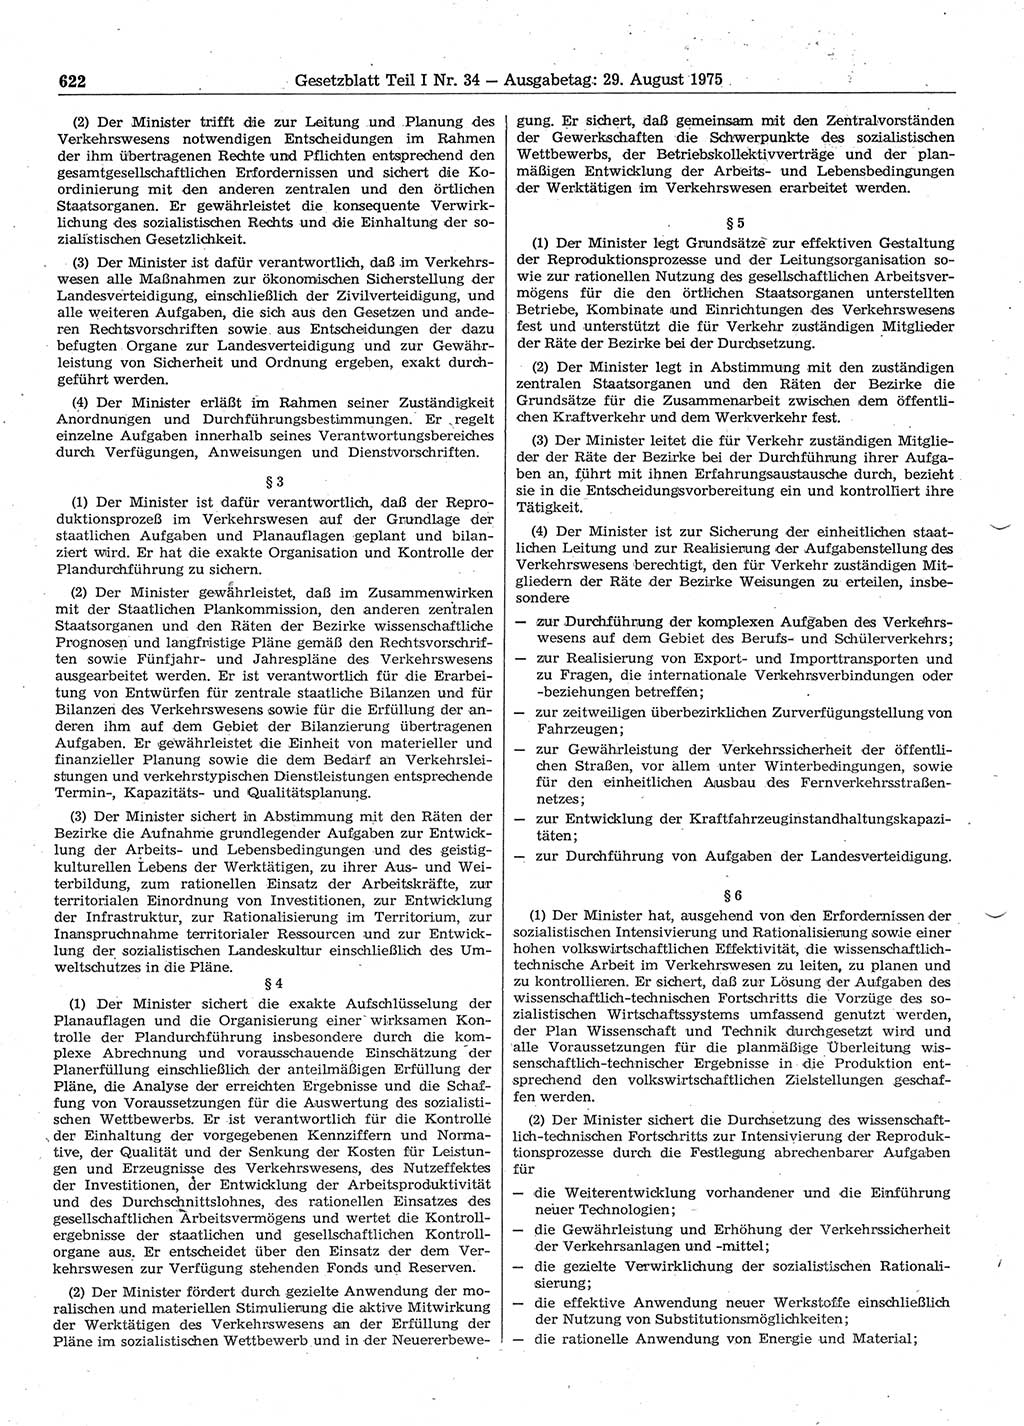 Gesetzblatt (GBl.) der Deutschen Demokratischen Republik (DDR) Teil Ⅰ 1975, Seite 622 (GBl. DDR Ⅰ 1975, S. 622)